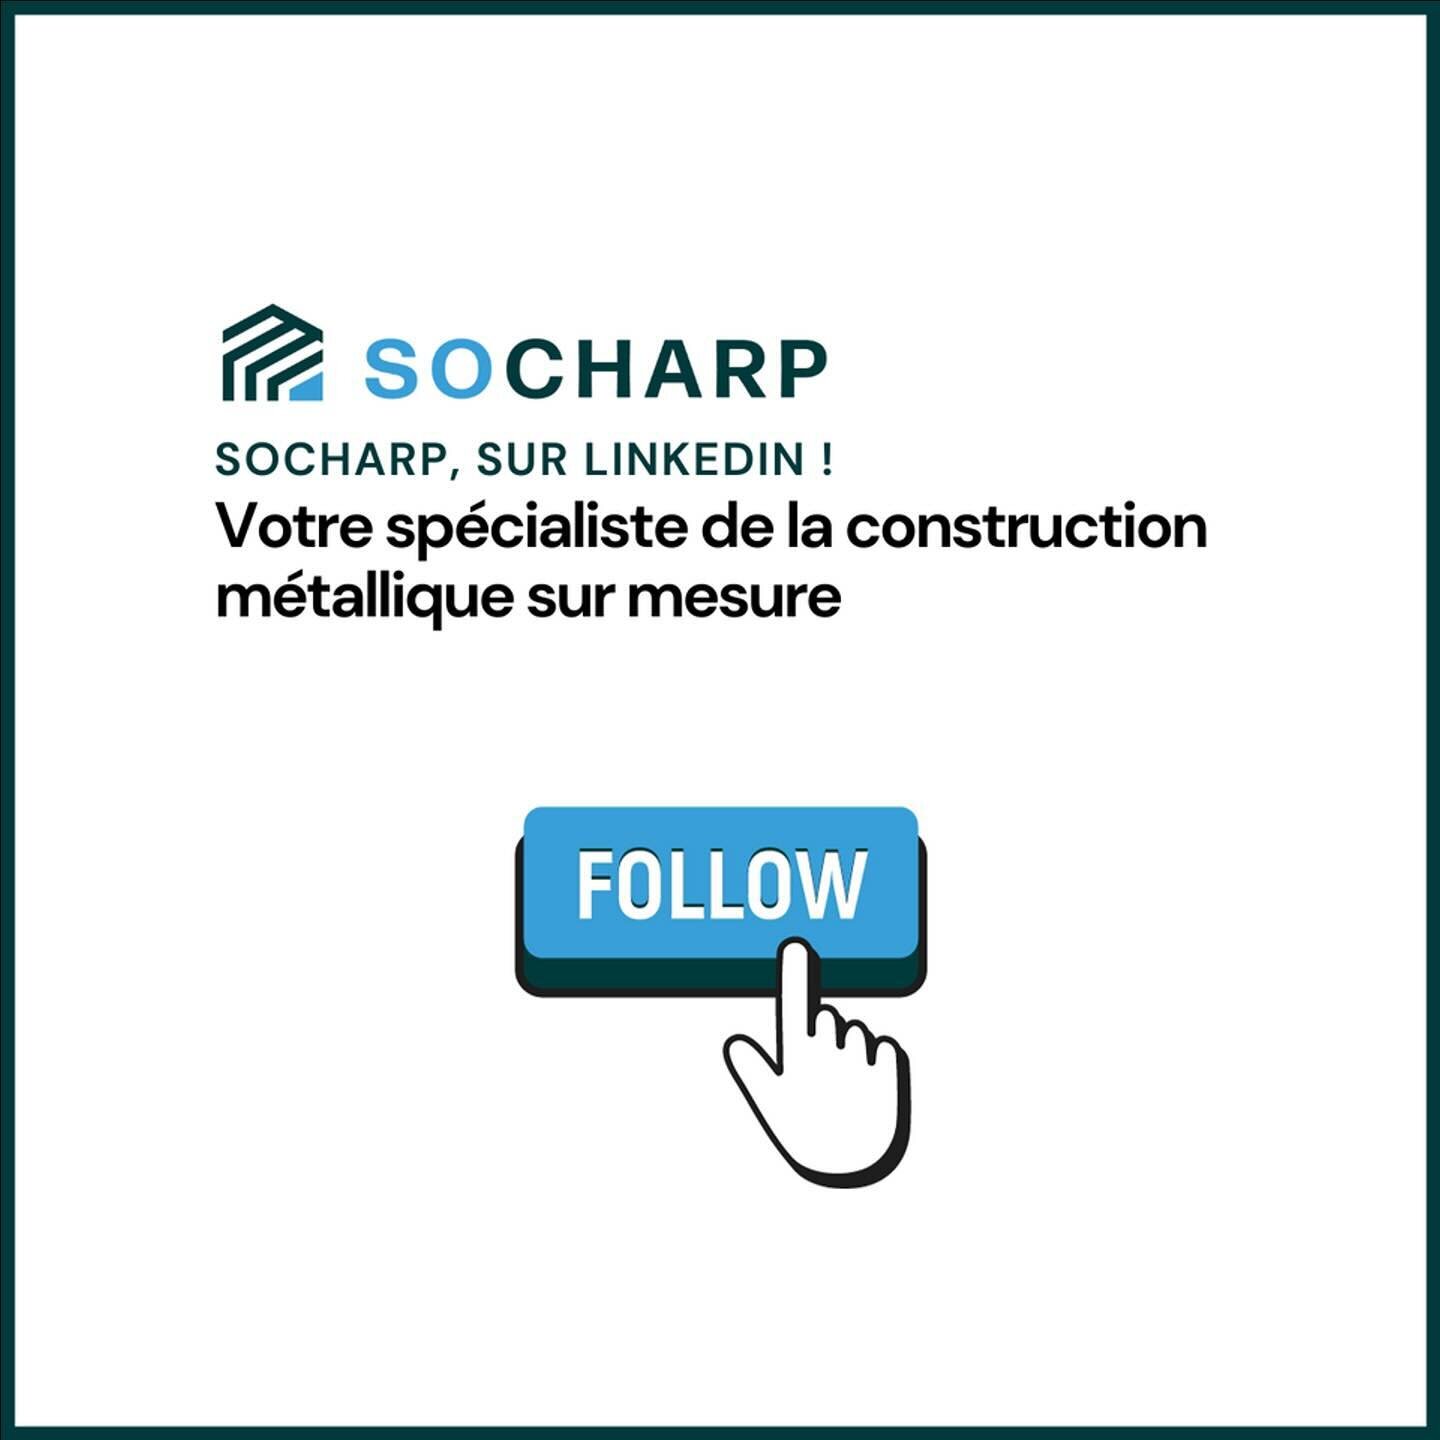 Bienvenue sur la page Instagram de SOCHARP 👋,

Votre partenaire dans le domaine de la construction m&eacute;tallique sur-mesure.

🔧 Qui sommes-nous ?
SOCHARP est synonyme de ma&icirc;trise des techniques et de construction m&eacute;tallique. Nous r